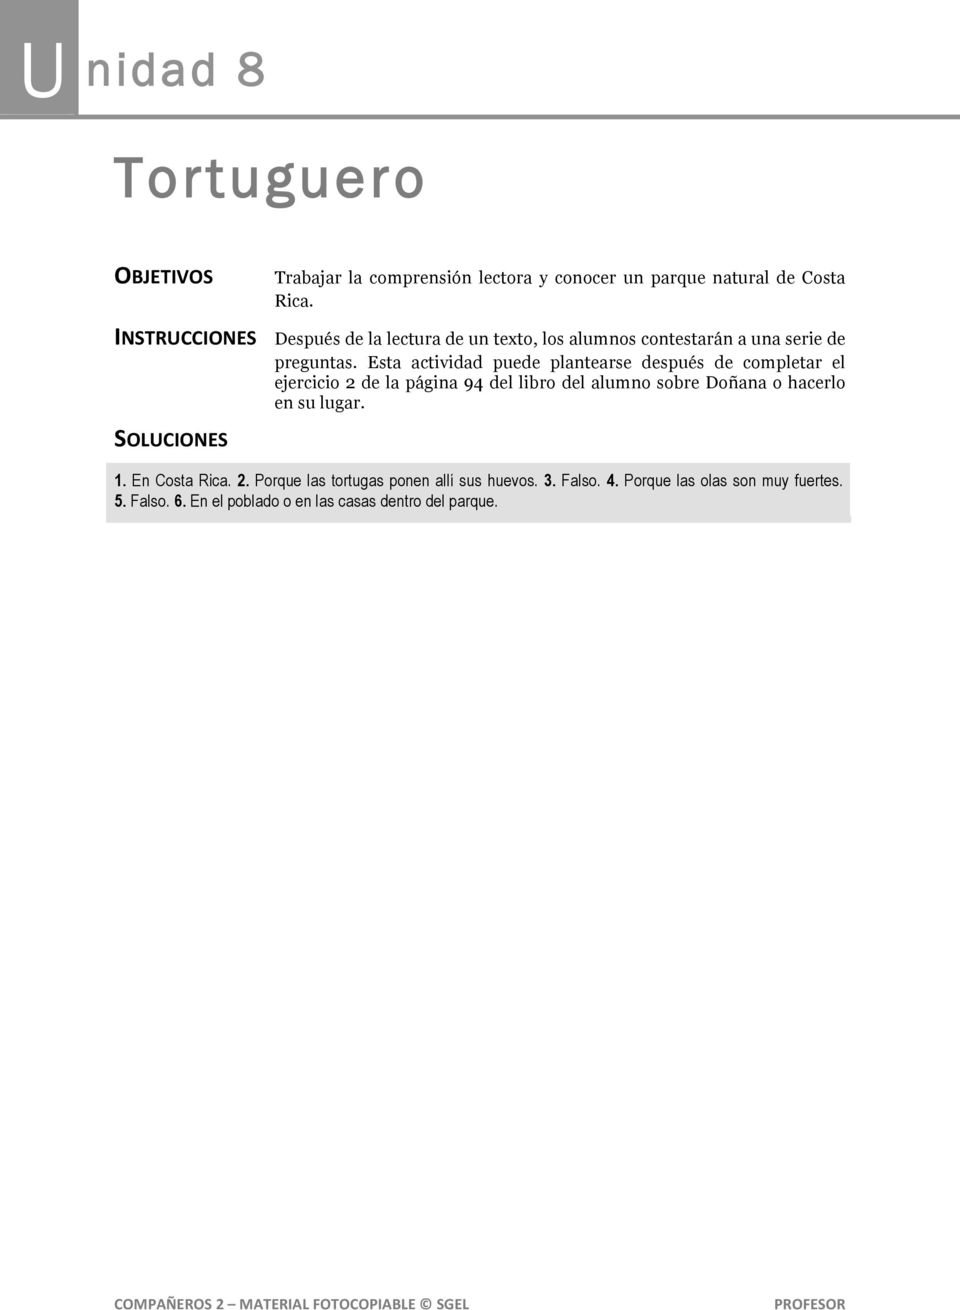 Esta actividad puede plantearse después de completar el ejercicio 2 de la página 94 del libro del alumno sobre Doñana o hacerlo en su lugar. 1.